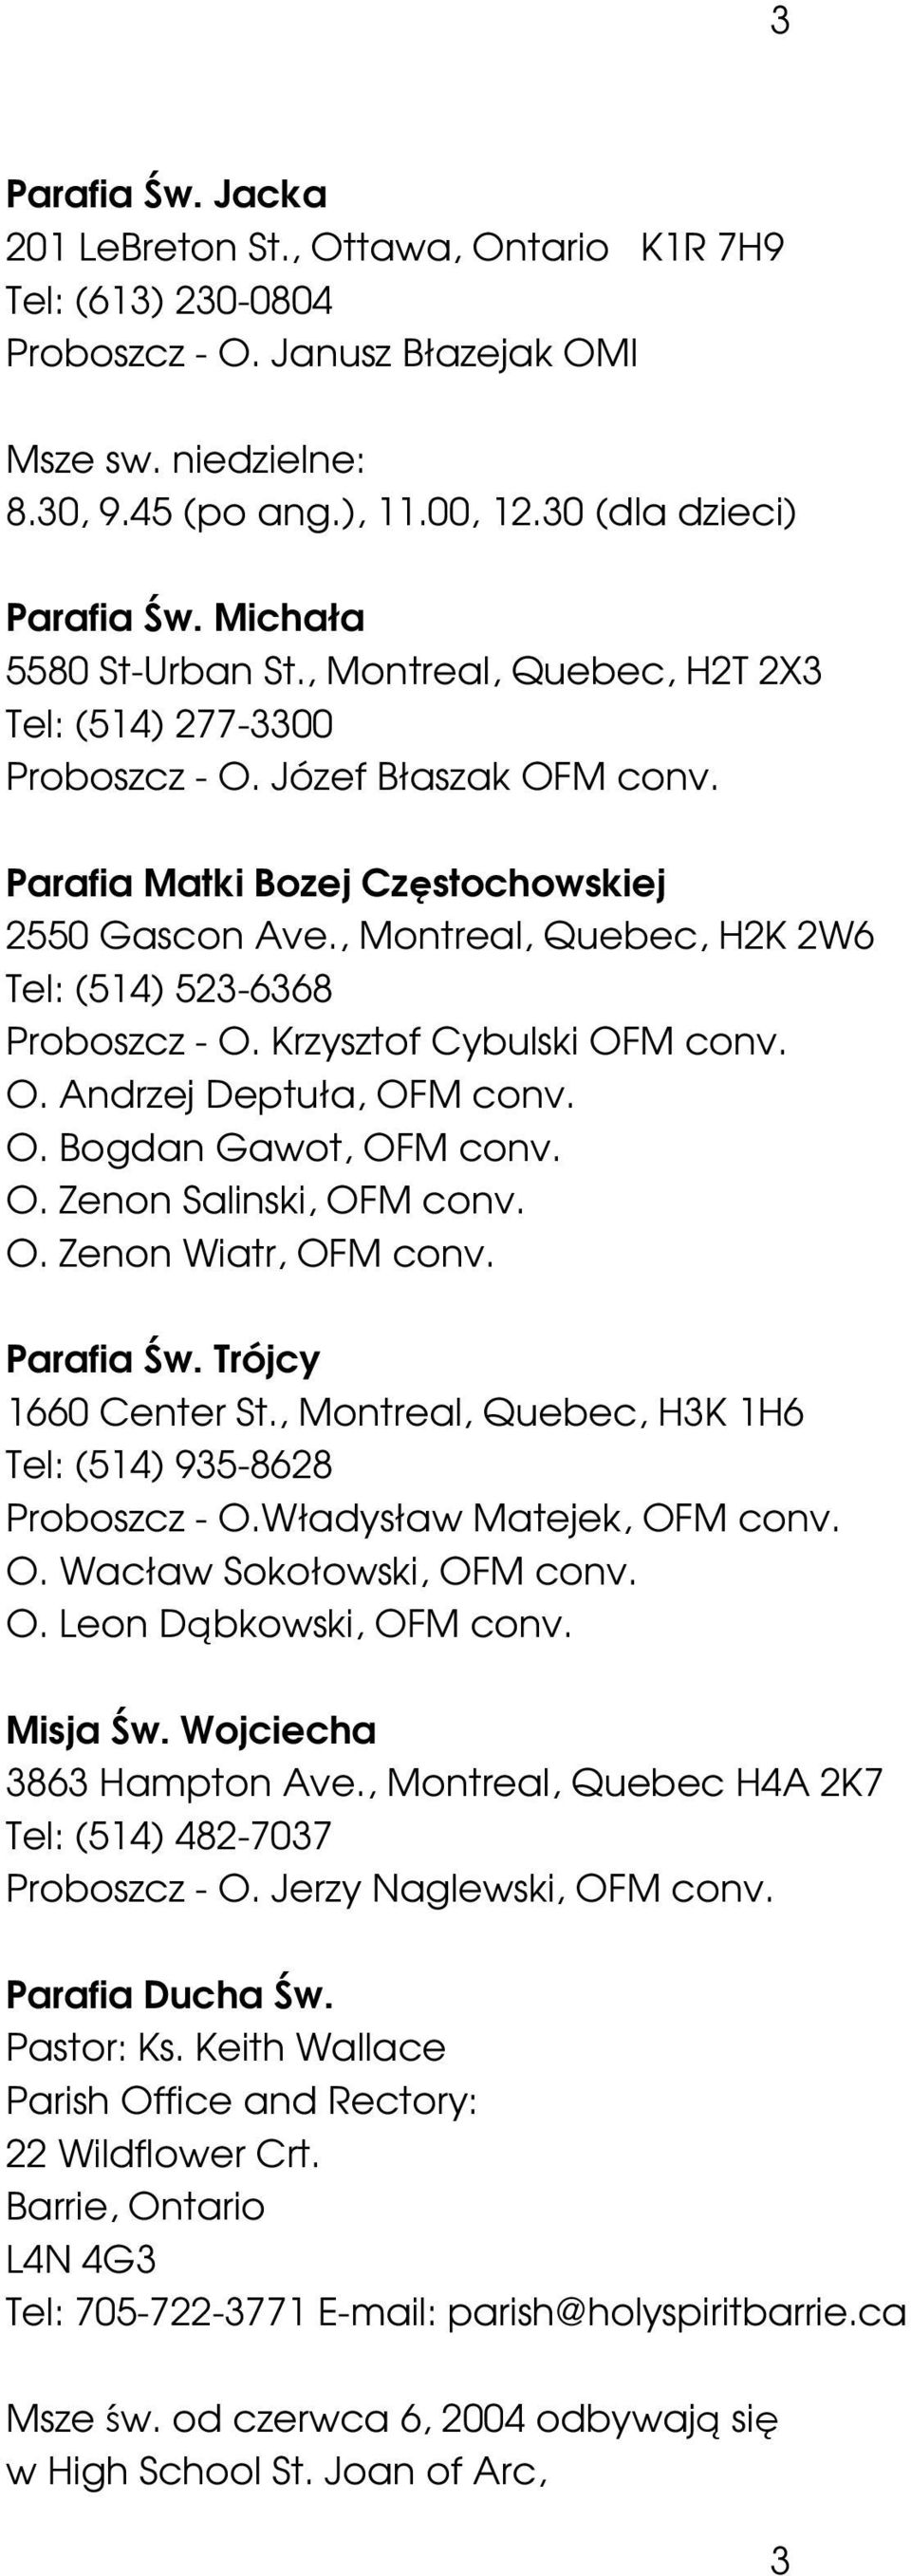 , Montreal, Quebec, H2K 2W6 Tel: (514) 523-6368 Proboszcz - O. Krzysztof Cybulski OFM conv. O. Andrzej Deptuła, OFM conv. O. Bogdan Gawot, OFM conv. O. Zenon Salinski, OFM conv. O. Zenon Wiatr, OFM conv.